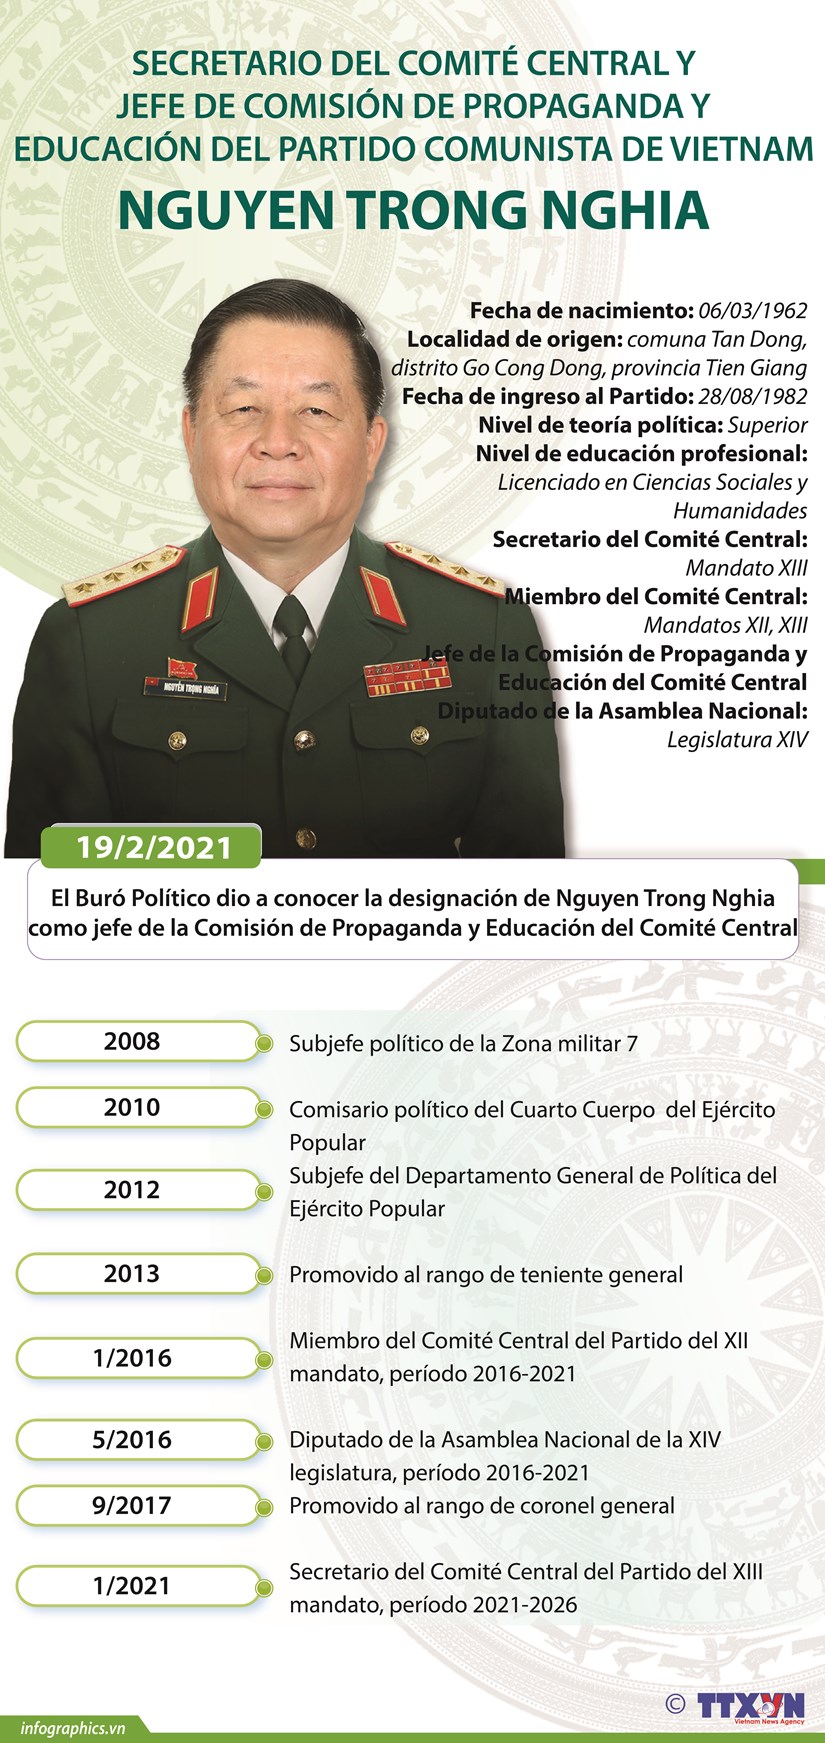 Nguyen Trong Nghia, jefe de Comision de Propaganda y Educacion de Comite Central del PCV hinh anh 1